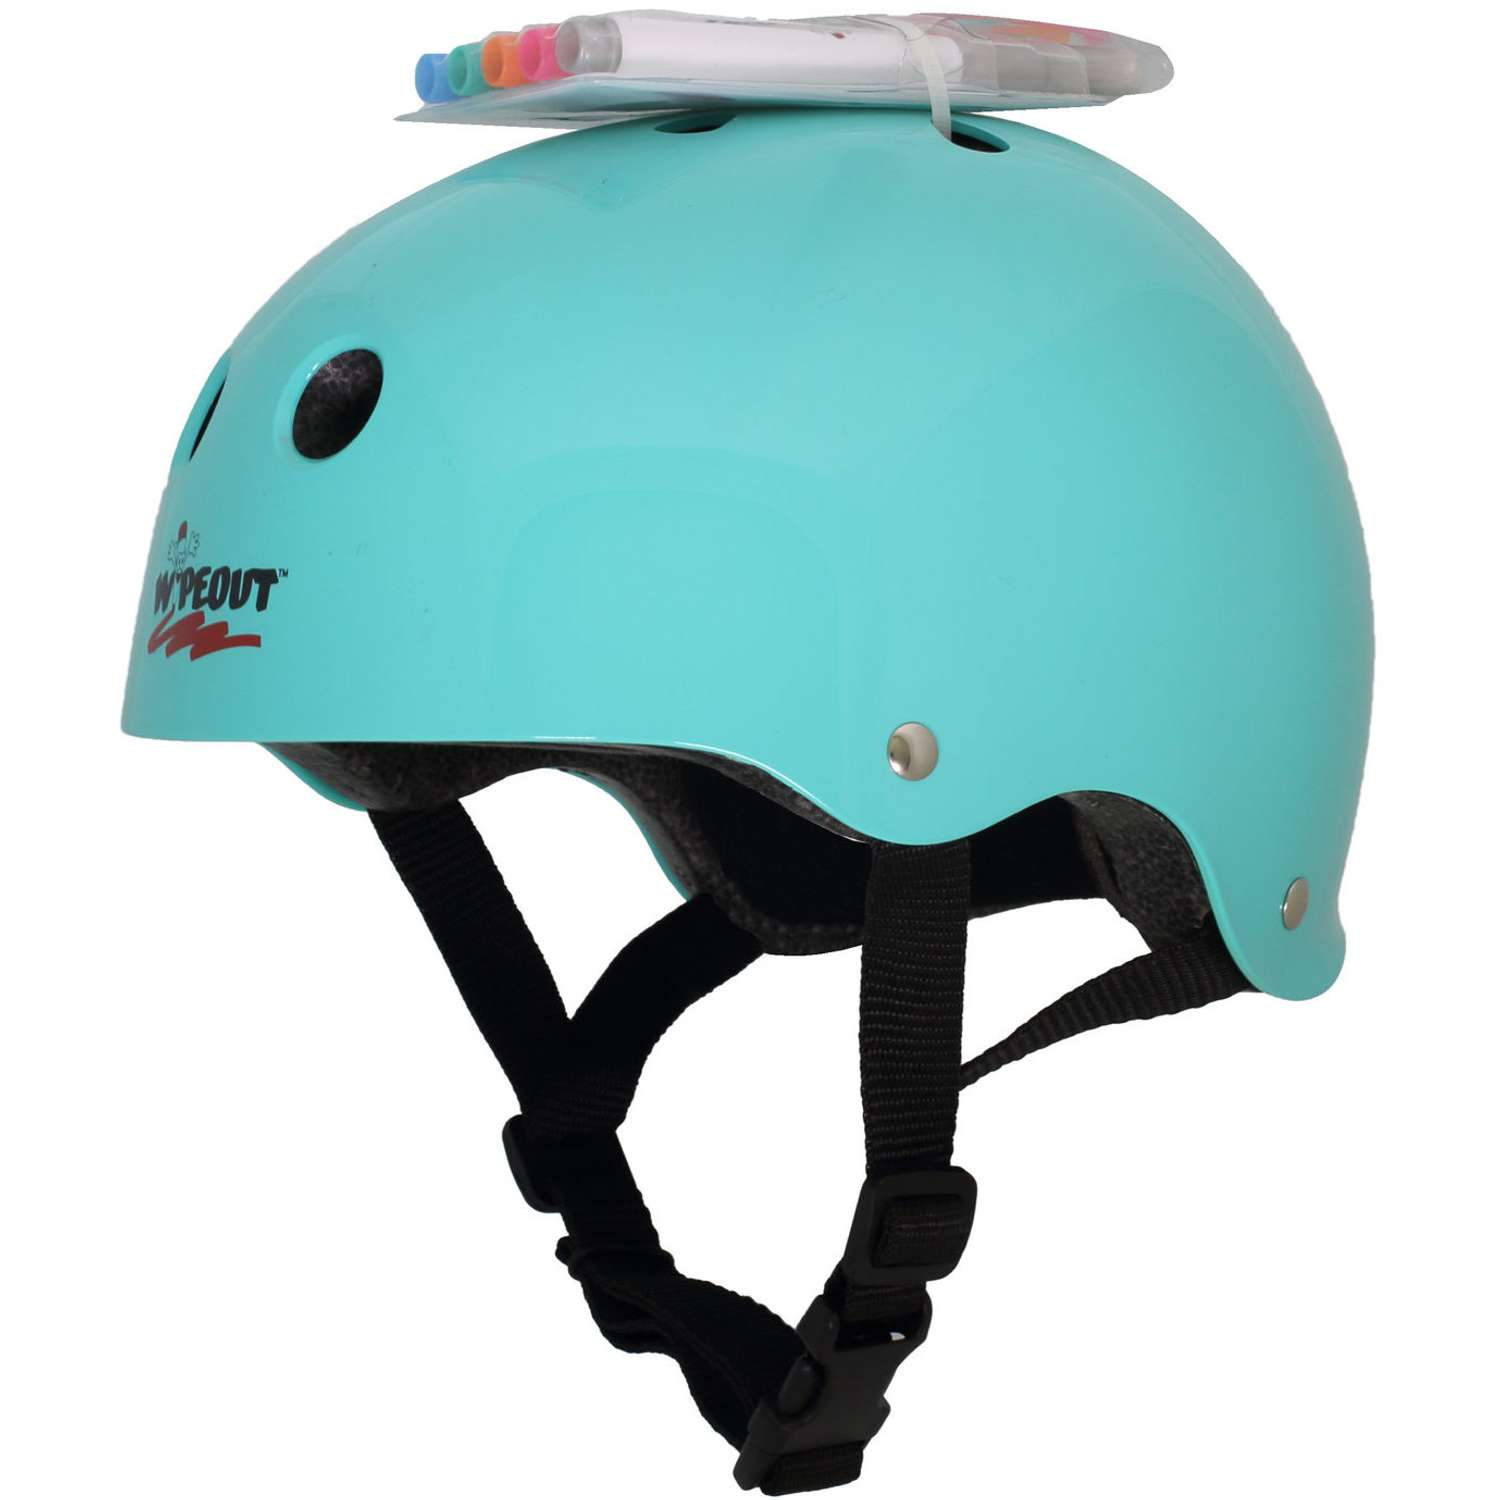 Шлем защитный спортивный WIPEOUT Teal Blue с фломастерами и трафаретами / размер L 8+ / обхват головы 52-56 см. - фото 2